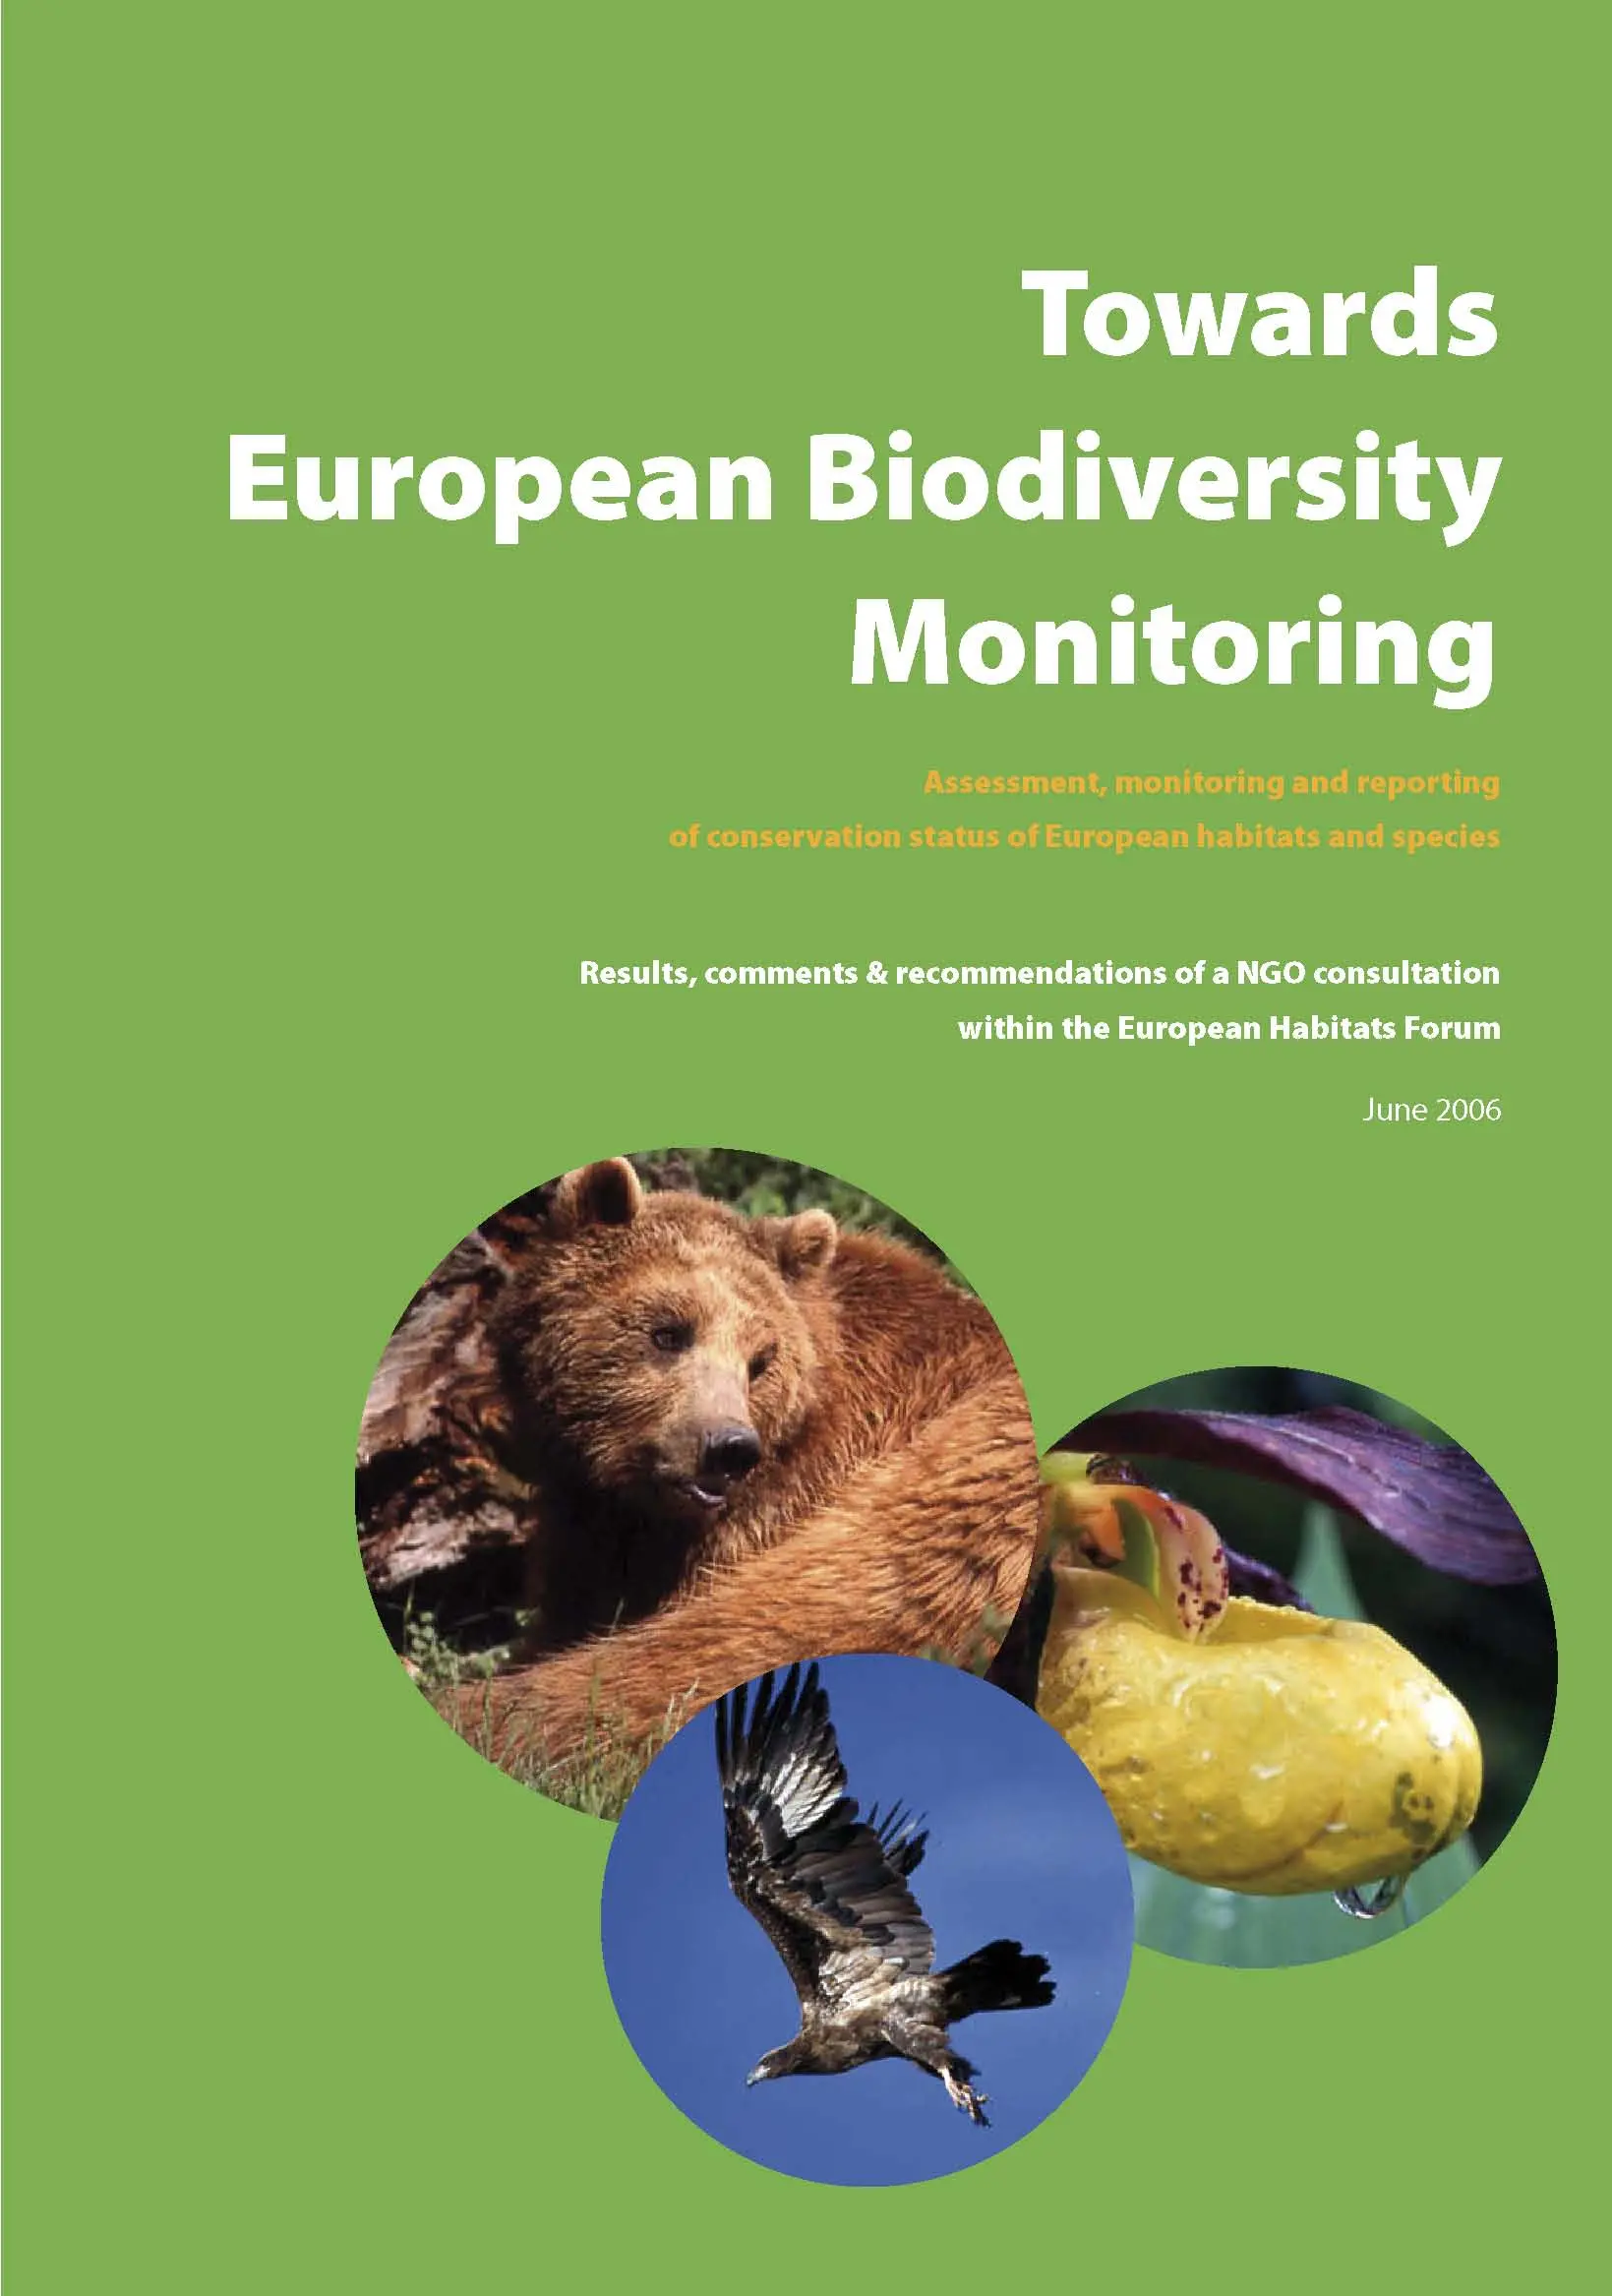 European Habitats Forum: Towards European Biodiversity Monitoring (June 2006)